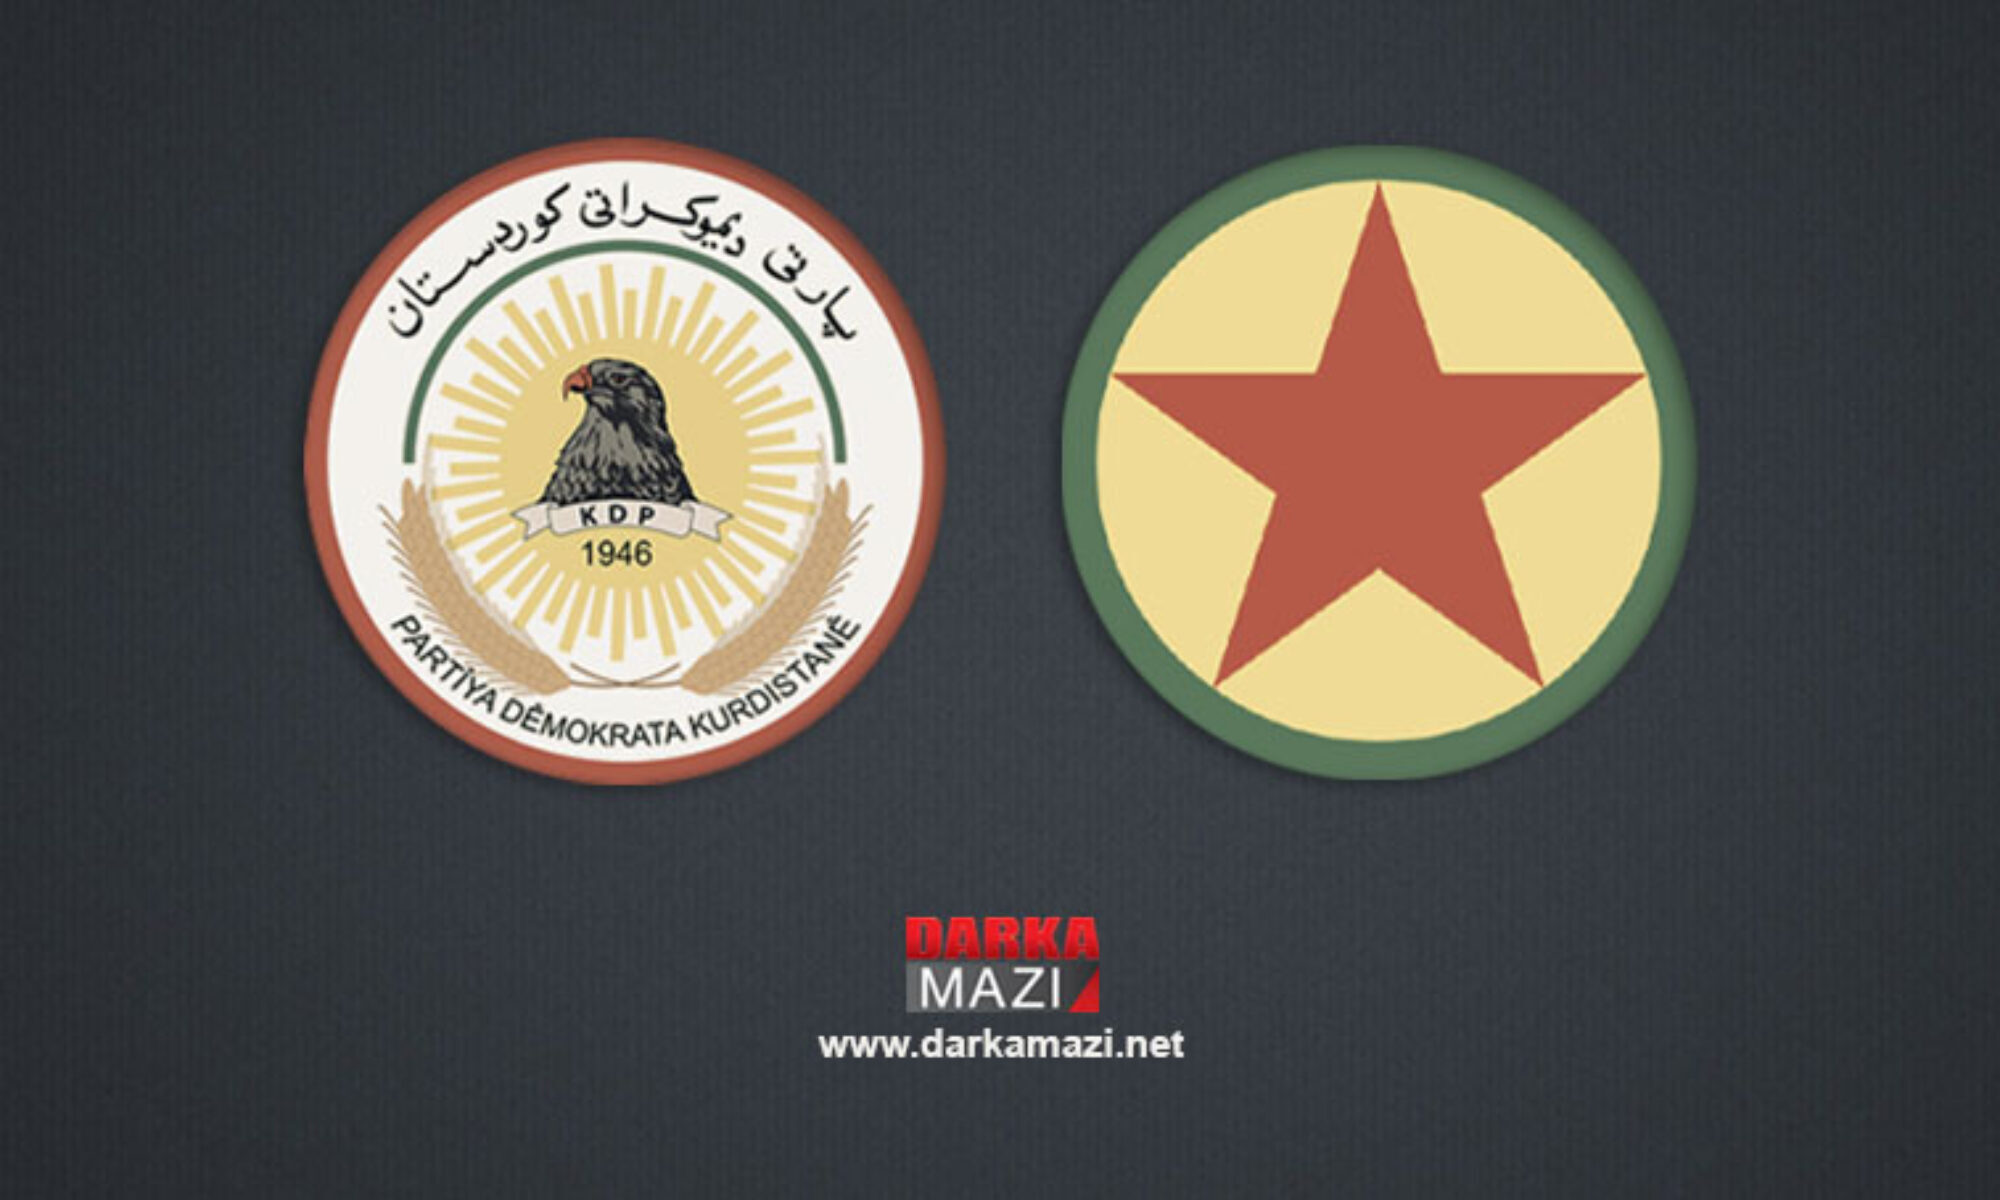 PDK yöneticisi Ruşdî: PKK yönetimi partilerini, işgalci devletlerin istihbarat örgütlerinin hizmetine soktu